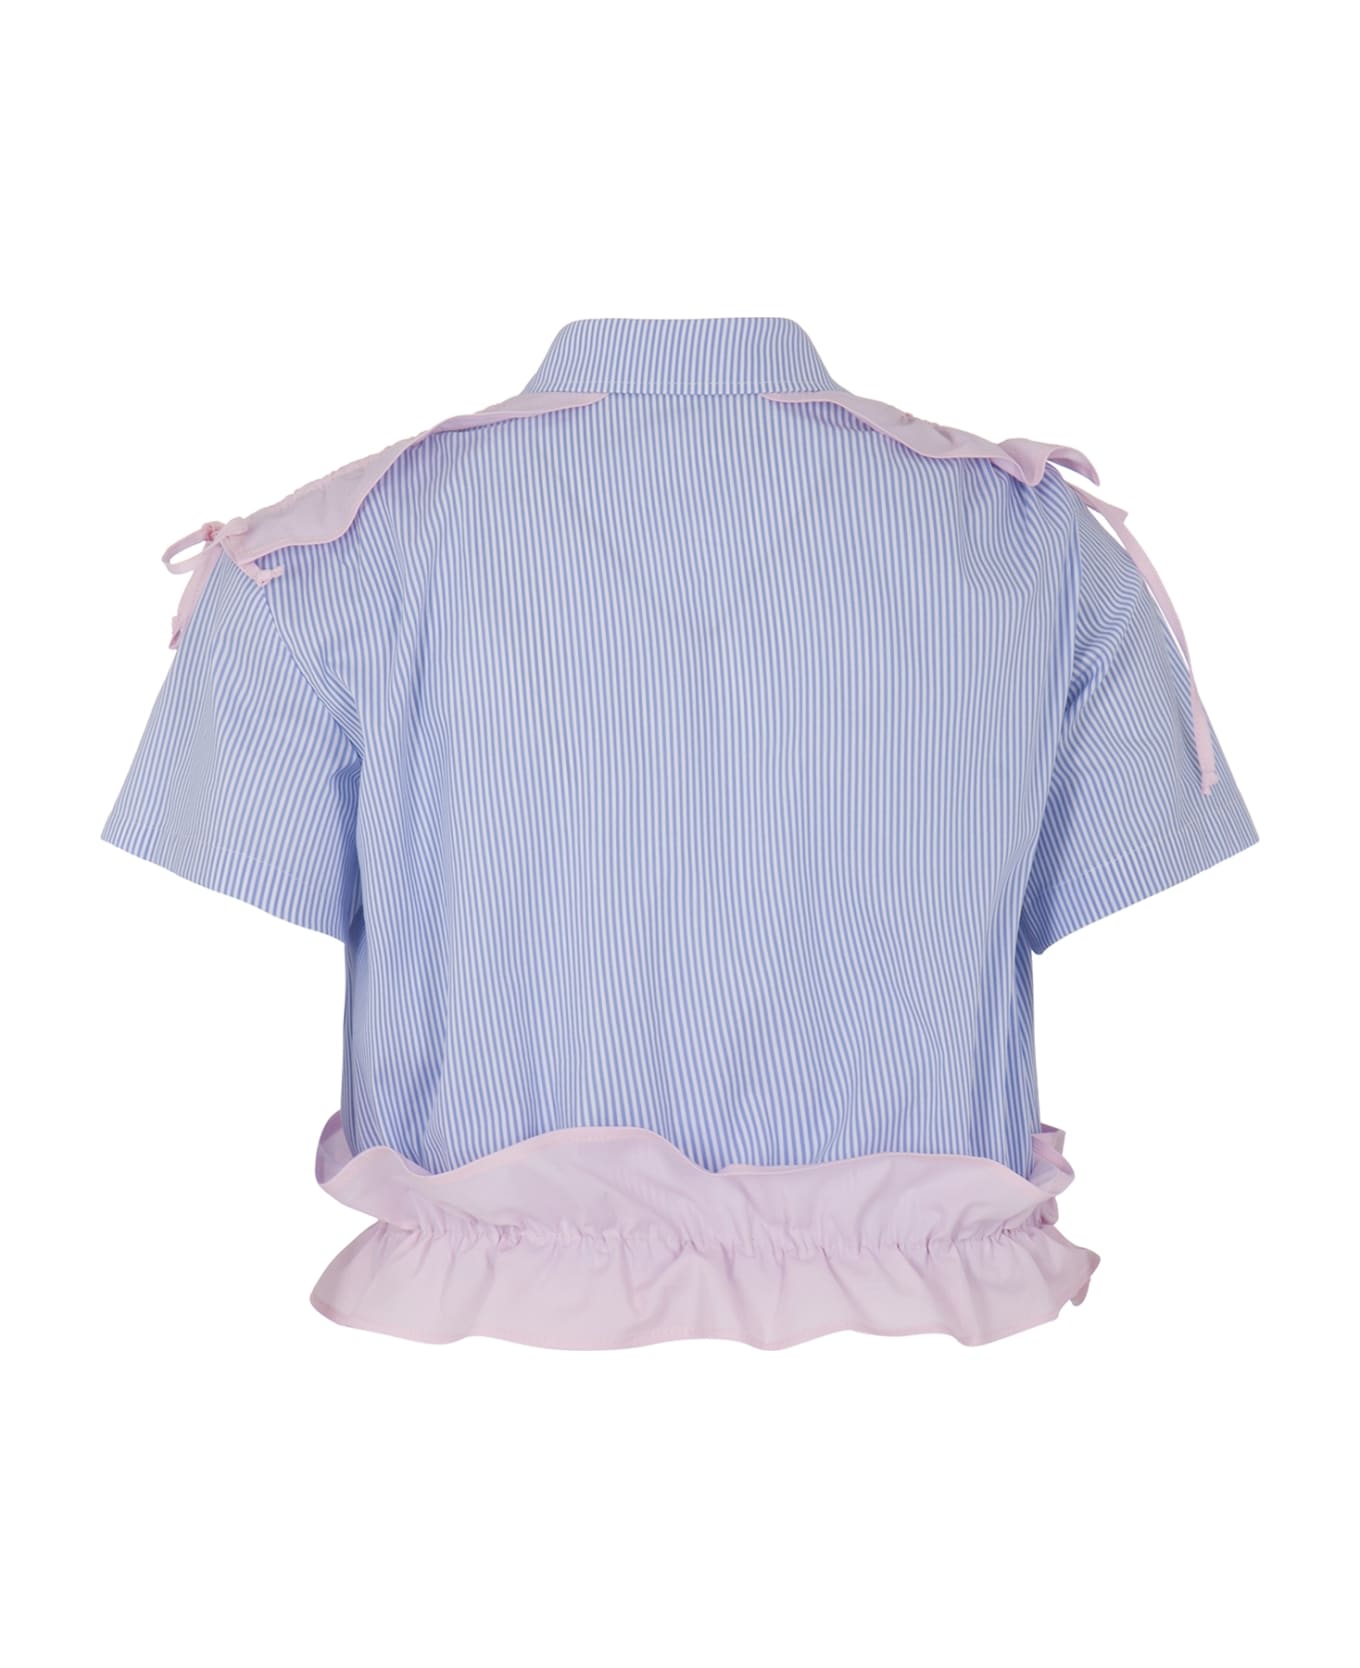 MSGM Camicia A Righe - Light blue シャツ